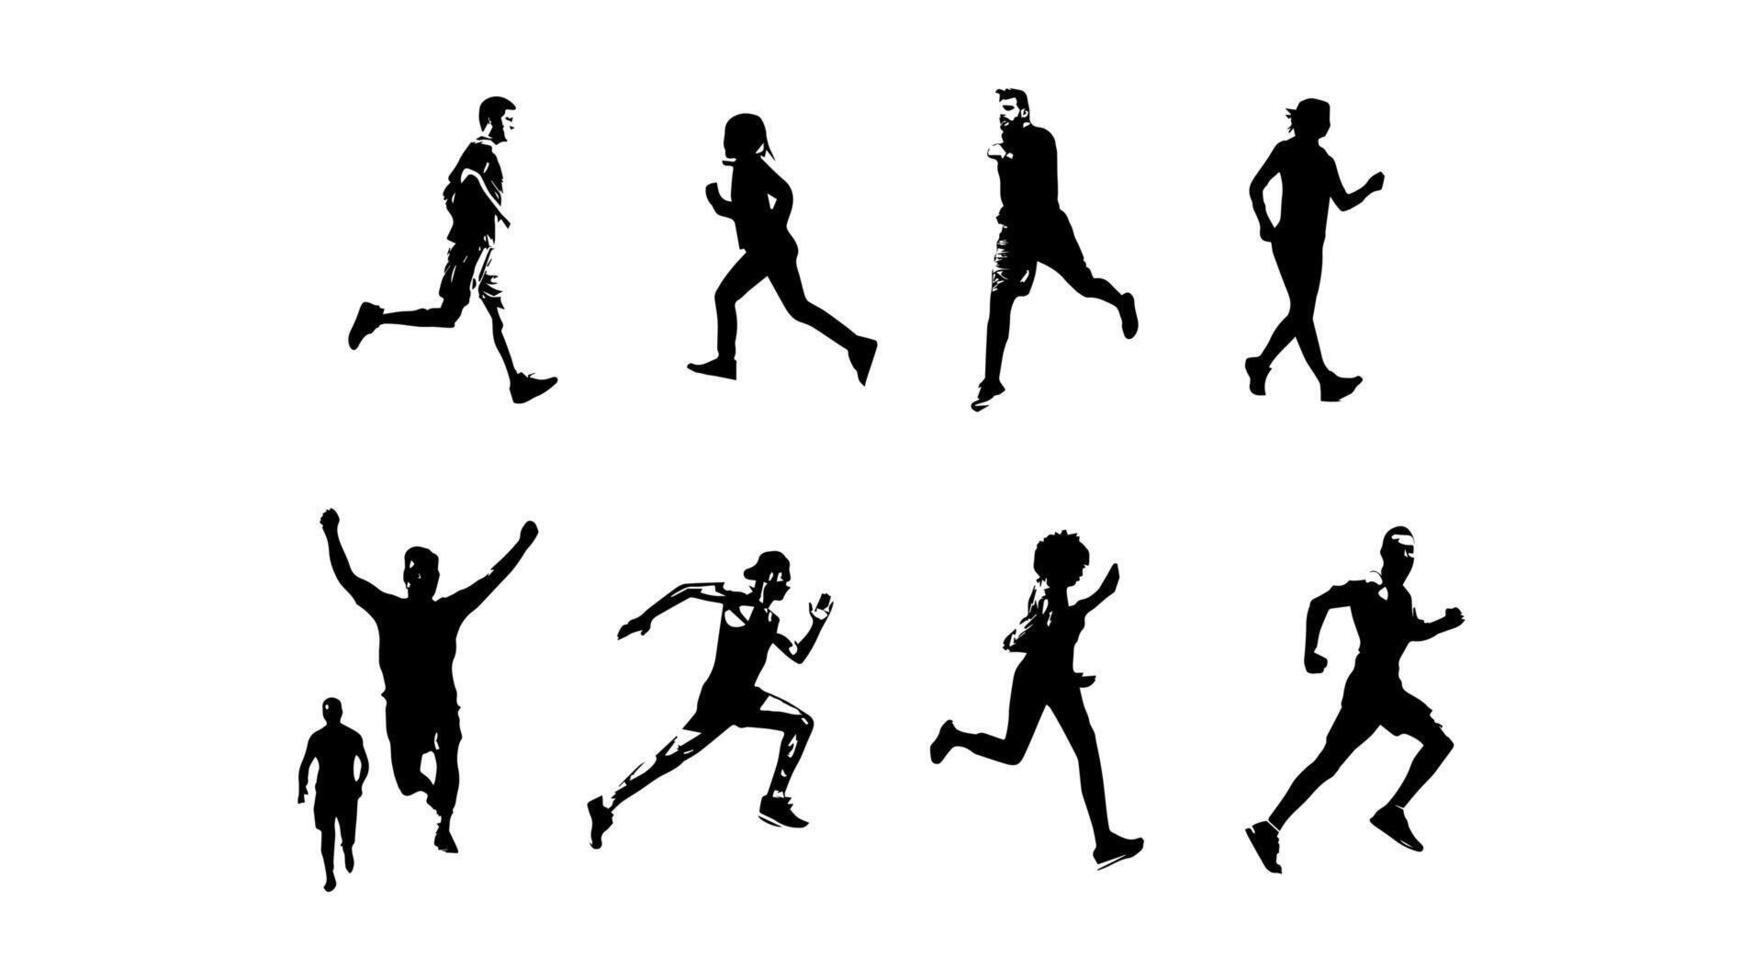 vector illustratie van rennen atleet silhouet